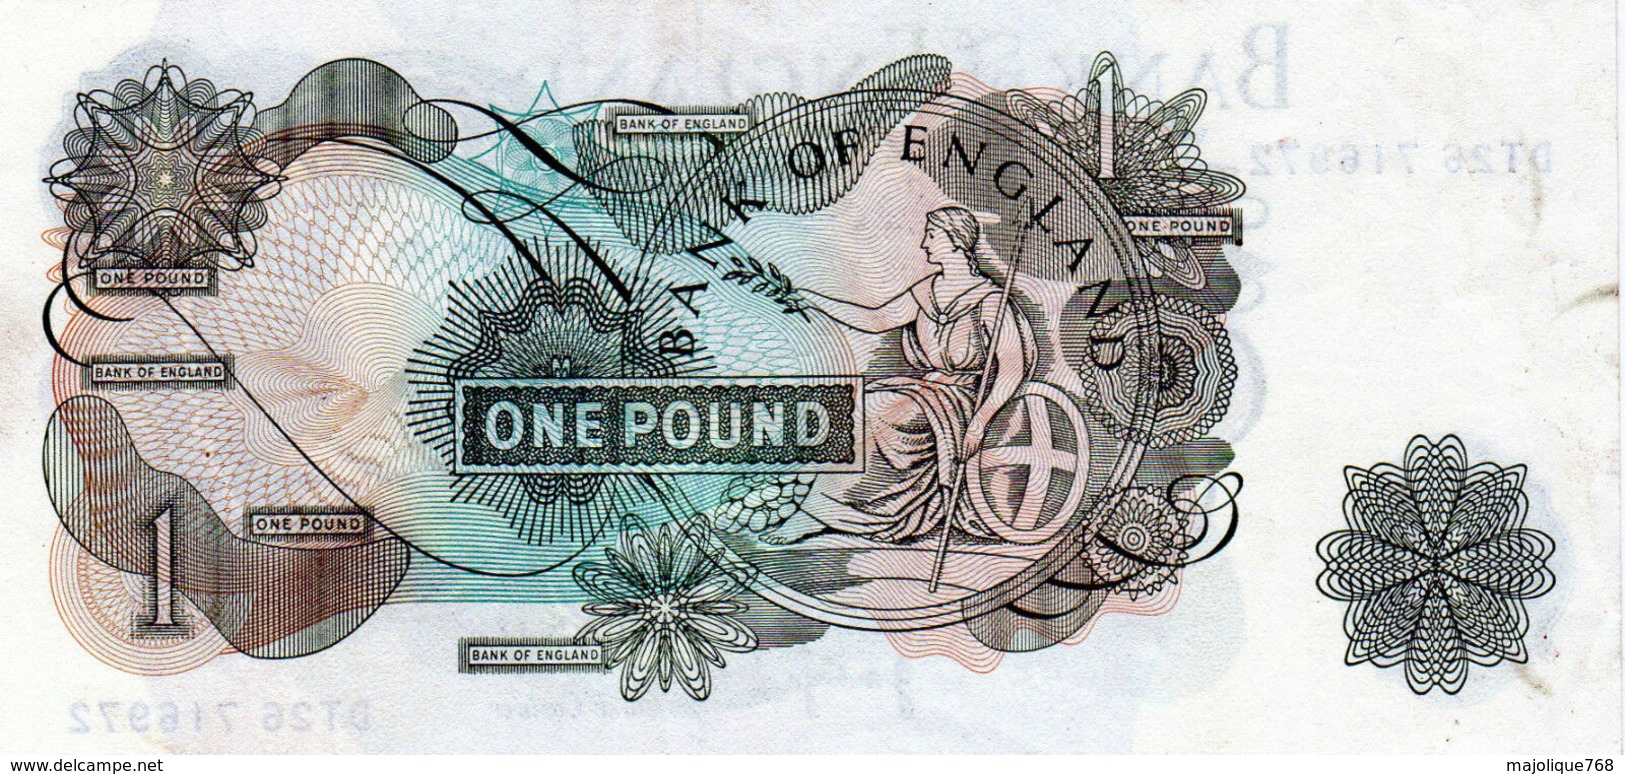 Billet De Grande-Bretagne De 1 Pound N D (1960-77) En T T B +-D T 26 716972 - 1 Pond